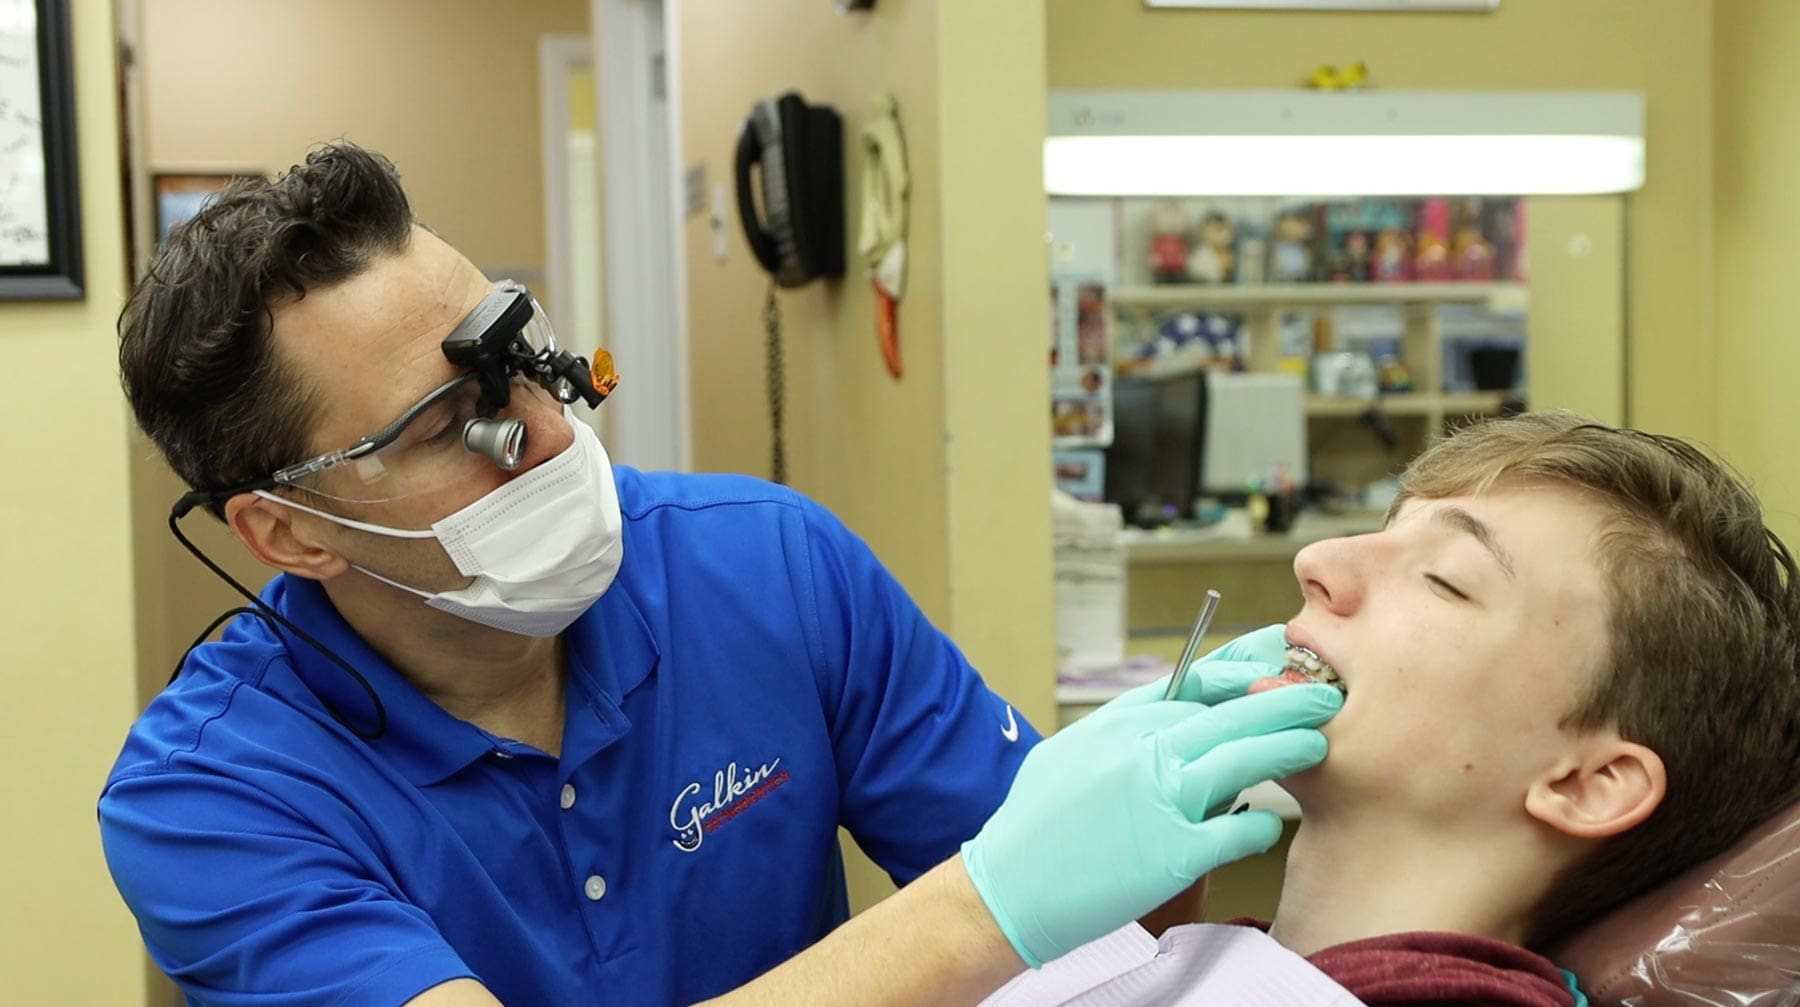 orthodontist appointment, Galkin Orthodontics, Woodbridge NJ